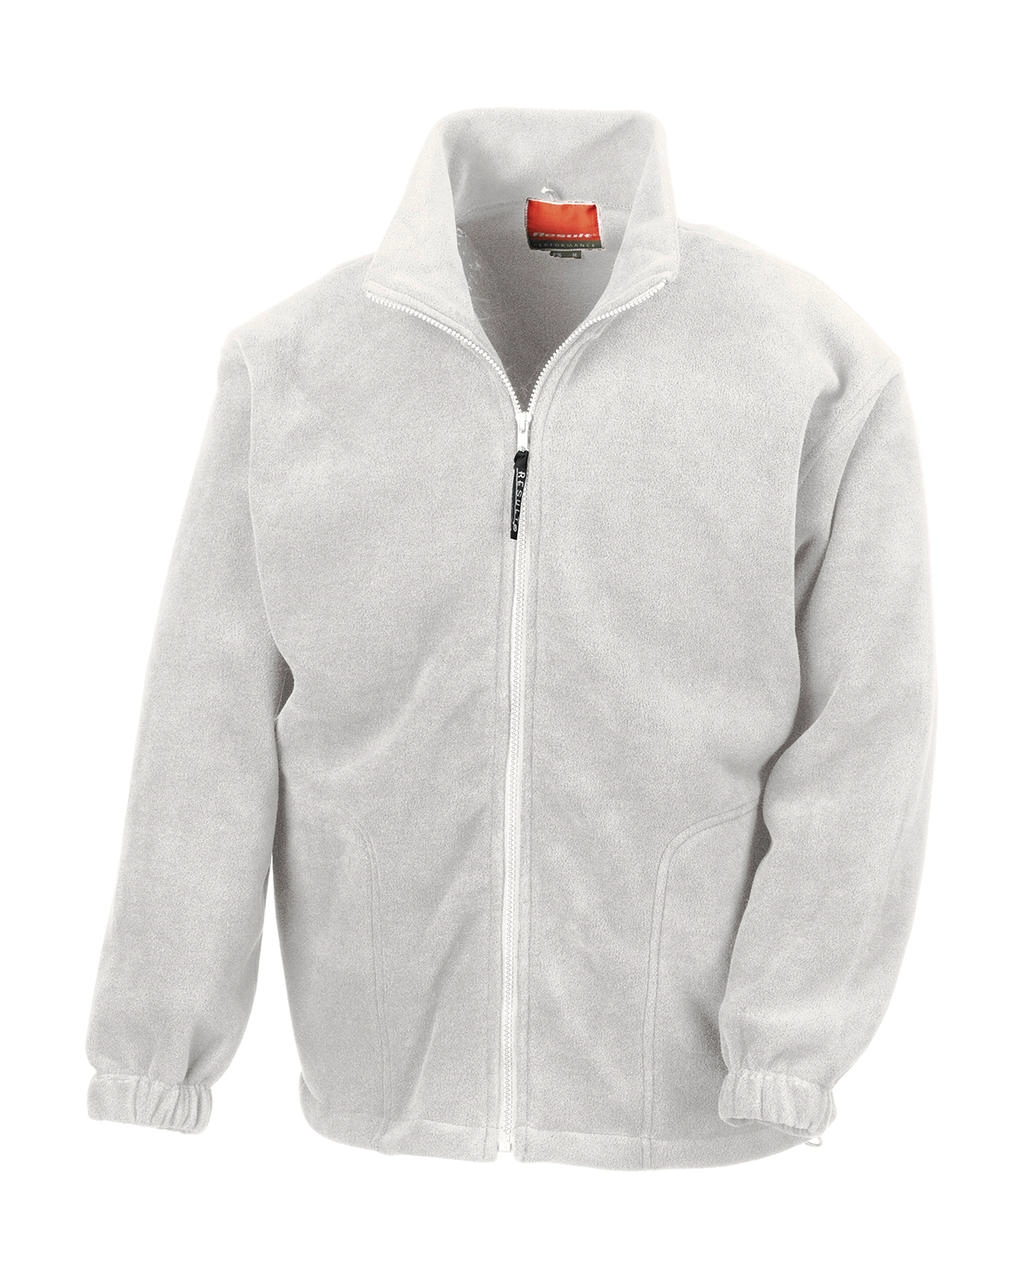 Polartherm™ Jacket zum Besticken und Bedrucken in der Farbe White mit Ihren Logo, Schriftzug oder Motiv.